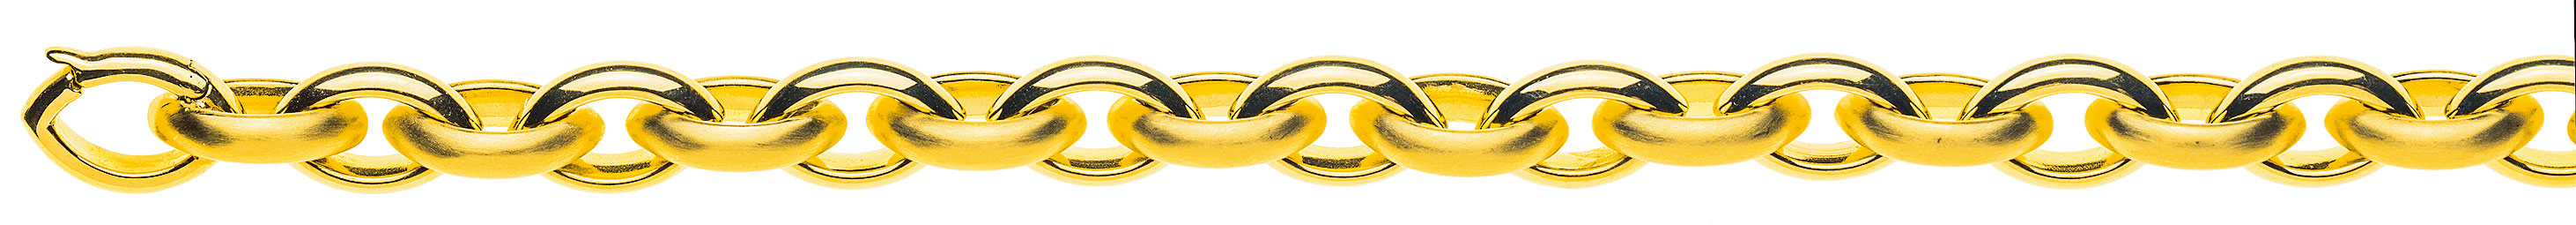 AURONOS Prestige Collier en or jaune 18K à navette fait main 45cm 9.5mm